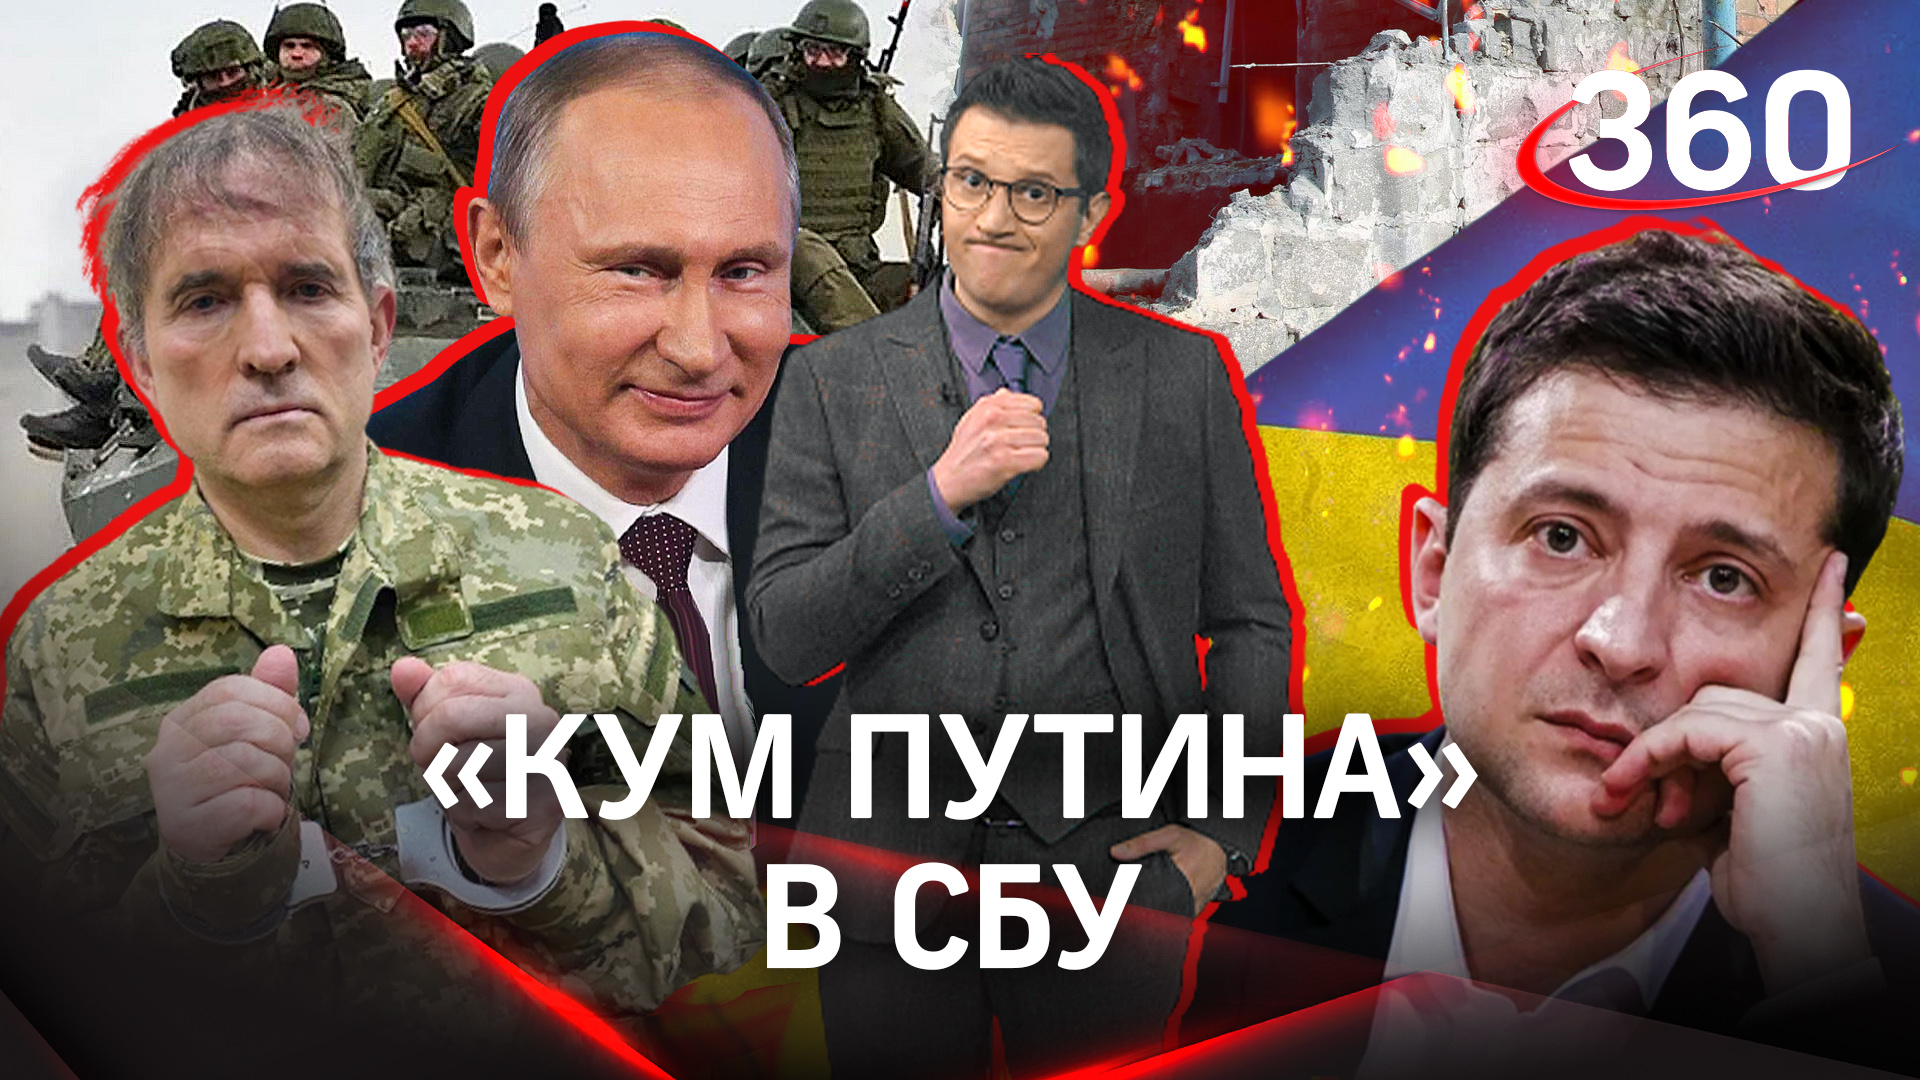 «Новый президент Украины» задержан — кум Путина в СБУ, а Зеленскому страшно